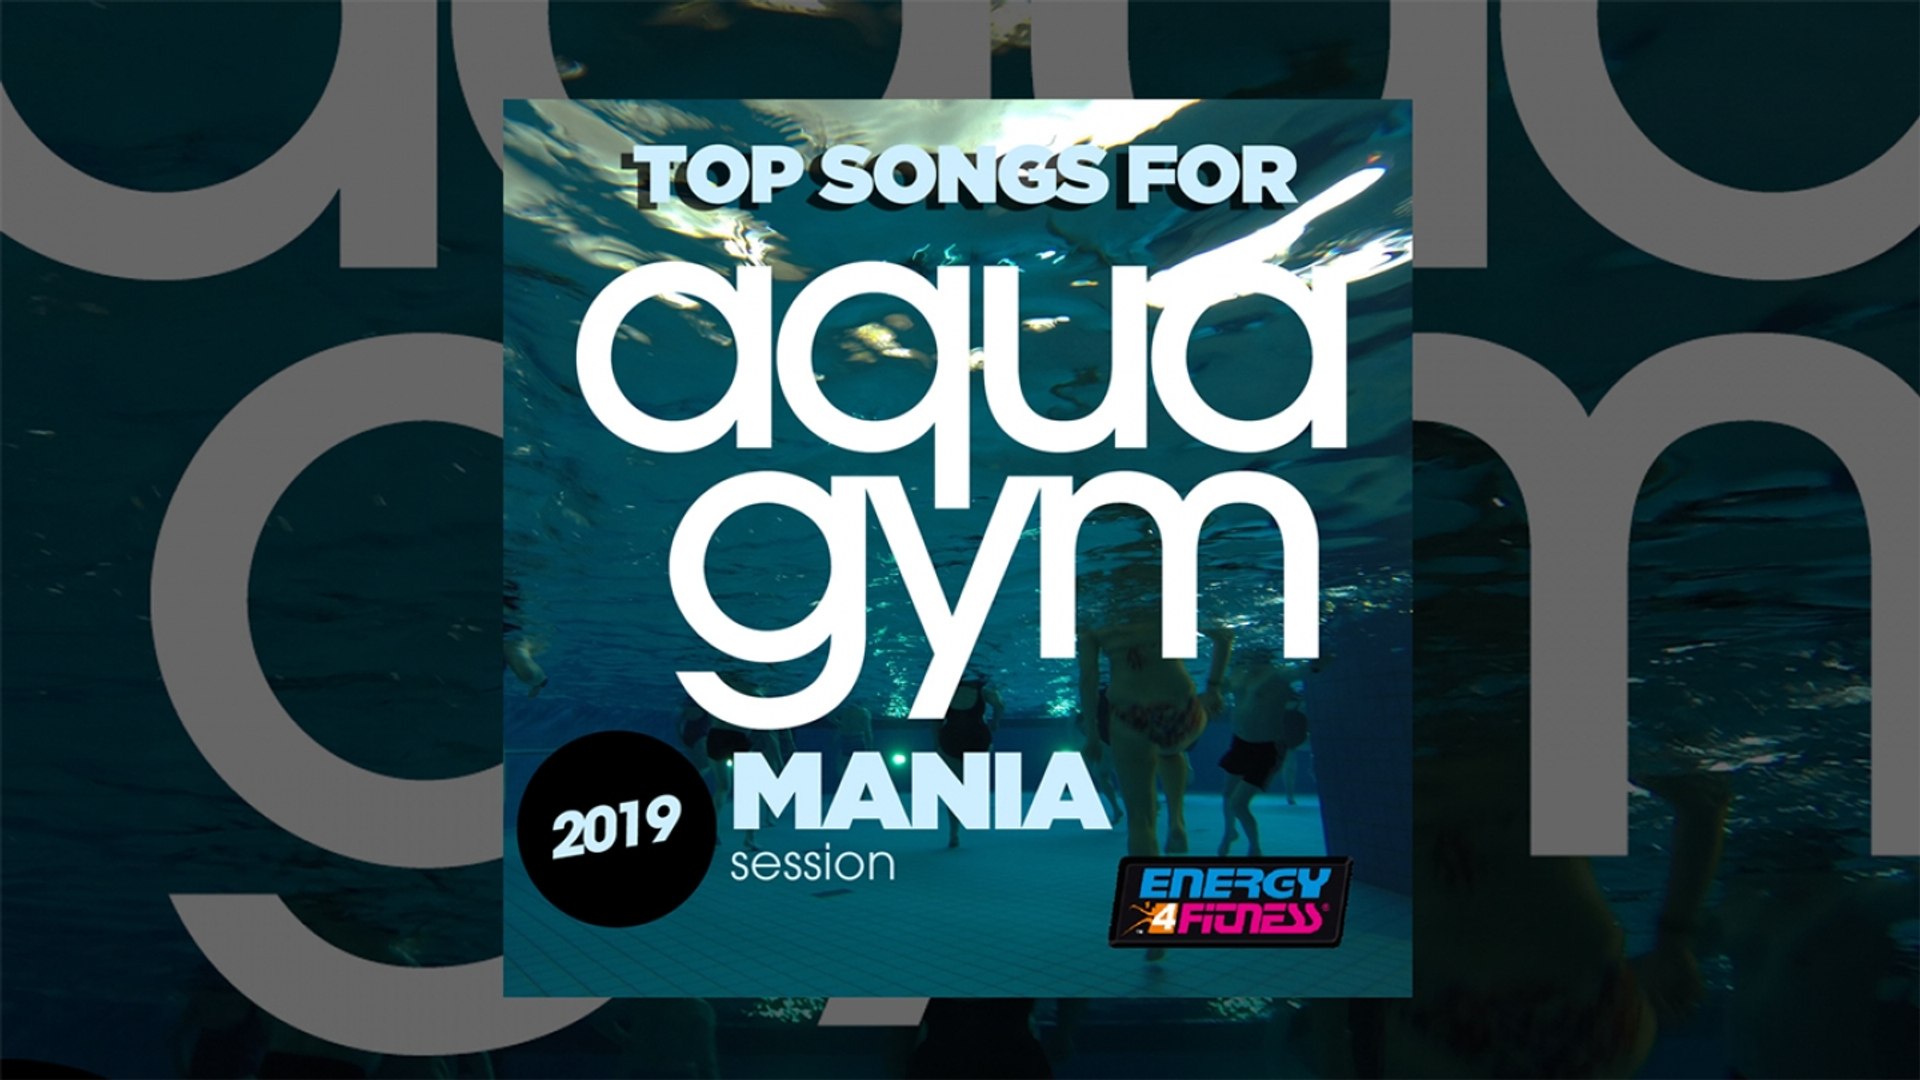 E4F - Top Songs For Aqua Gym 2019 Mania Session - Fitness & Music 2019